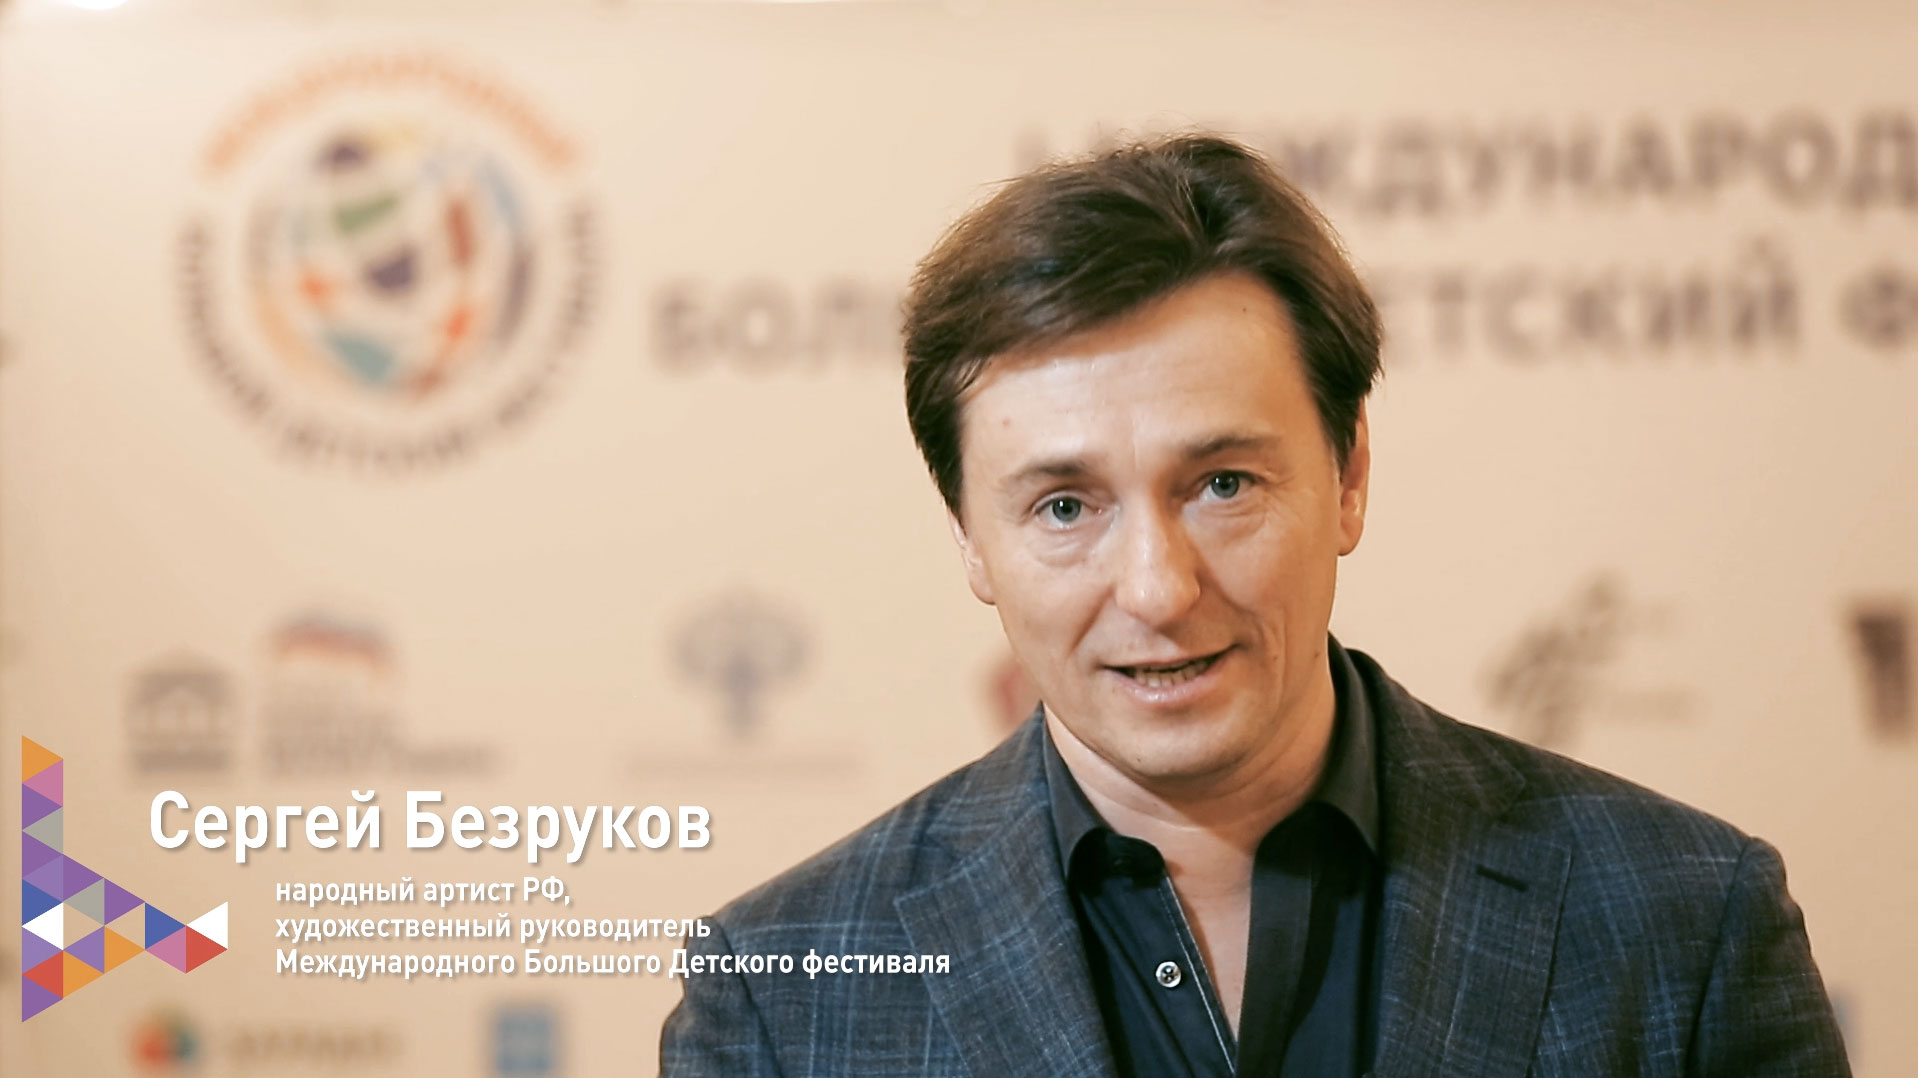 Приглашение художественного руководителя фестиваля Сергея Безрукова